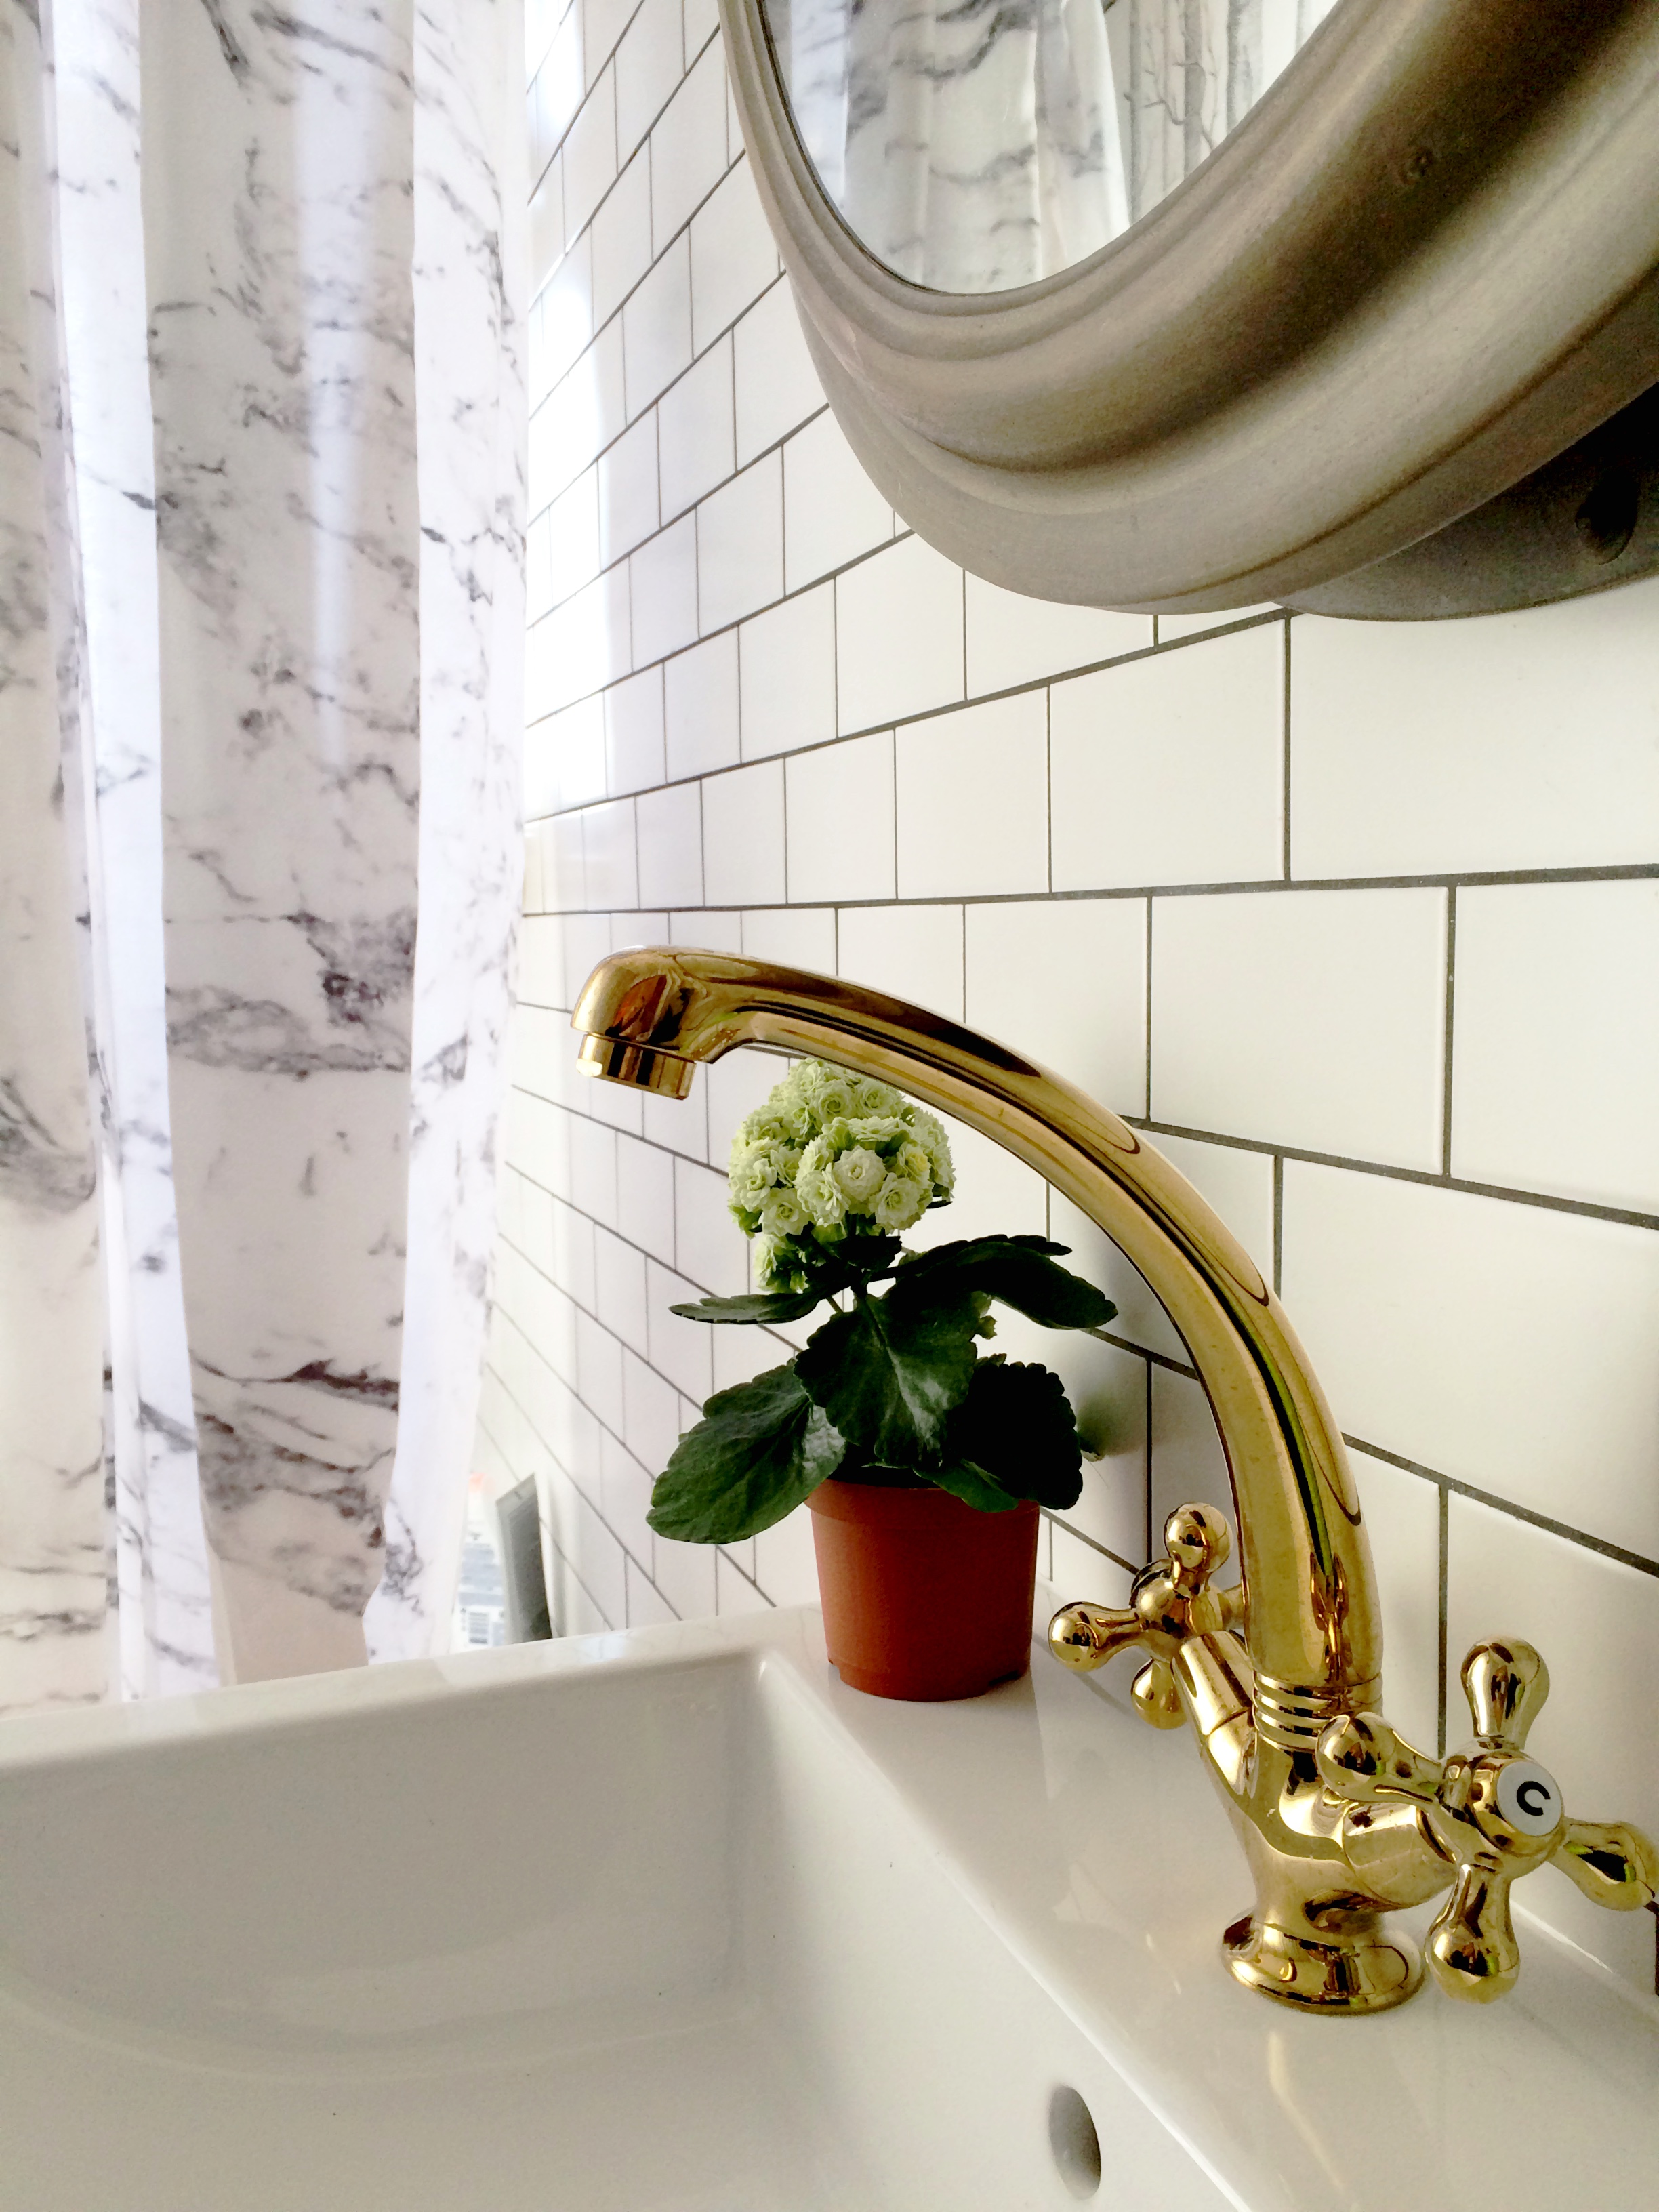 bathroom remodel; mirror; toilet; tile floor; shower; lighting; sink; wall art | Apartment remodeled by: Deborah Peterson Milne